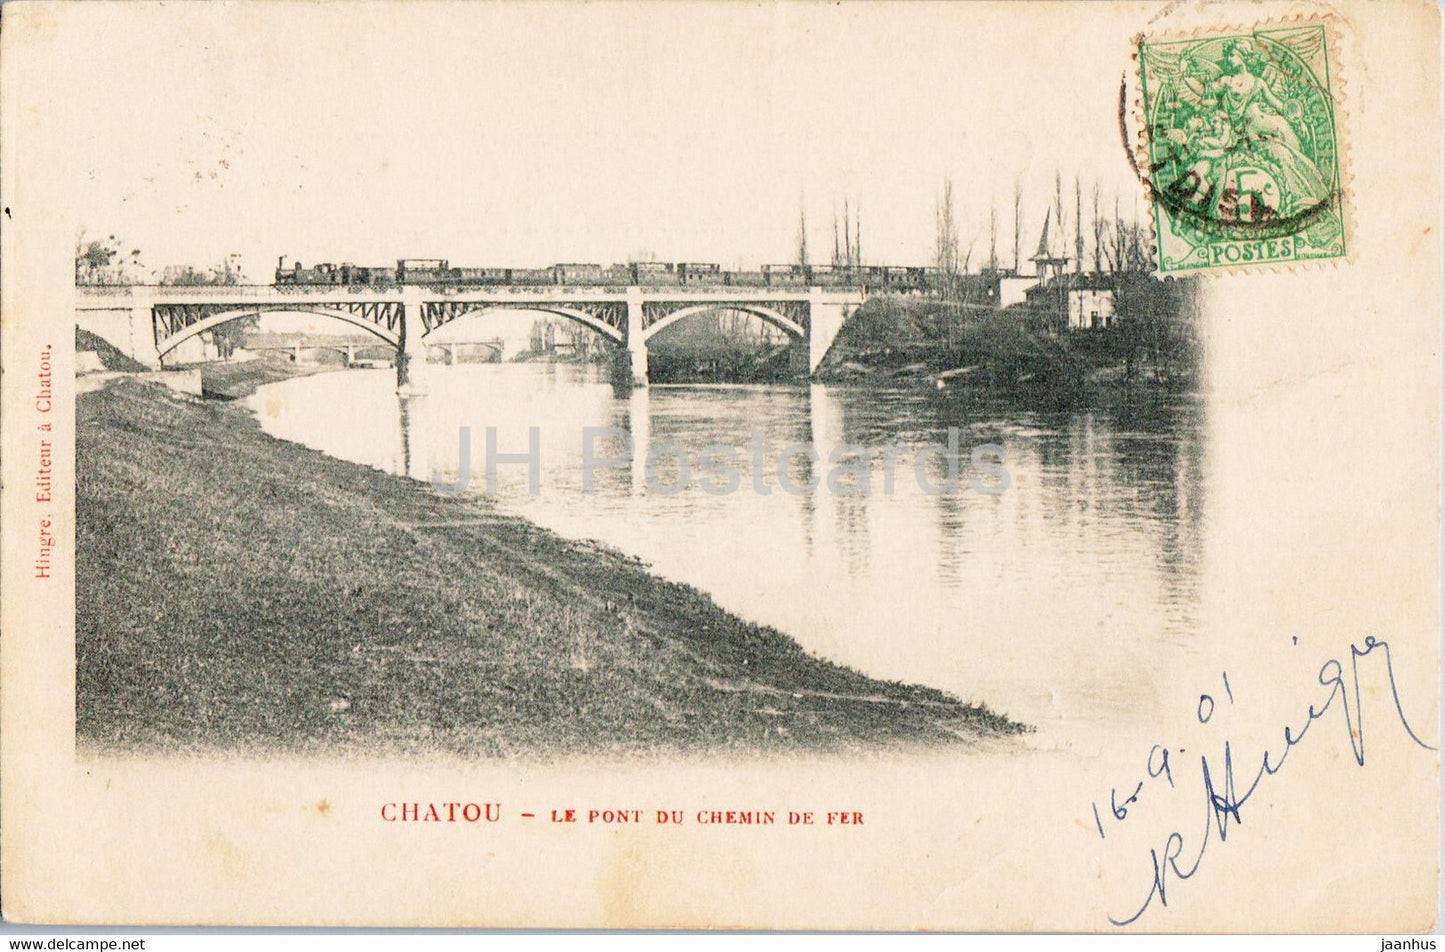 Chatou - Le Pont du Chemin de Fer - railway bridge - train - old postcard - 1901 - France - used - JH Postcards